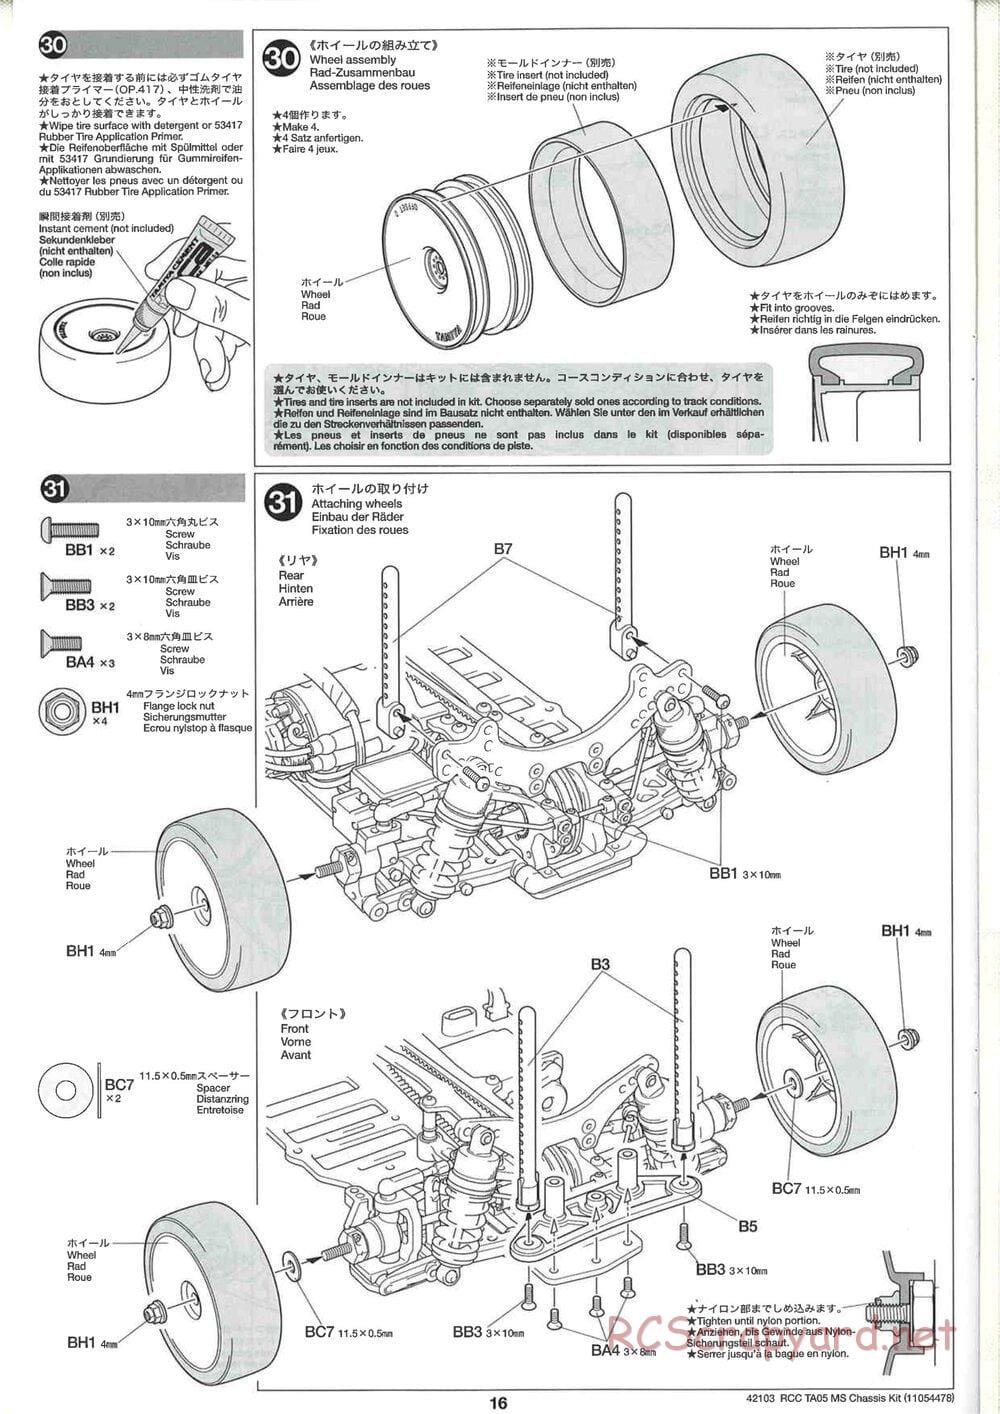 Tamiya - TA05 MS Chassis - Manual - Page 16